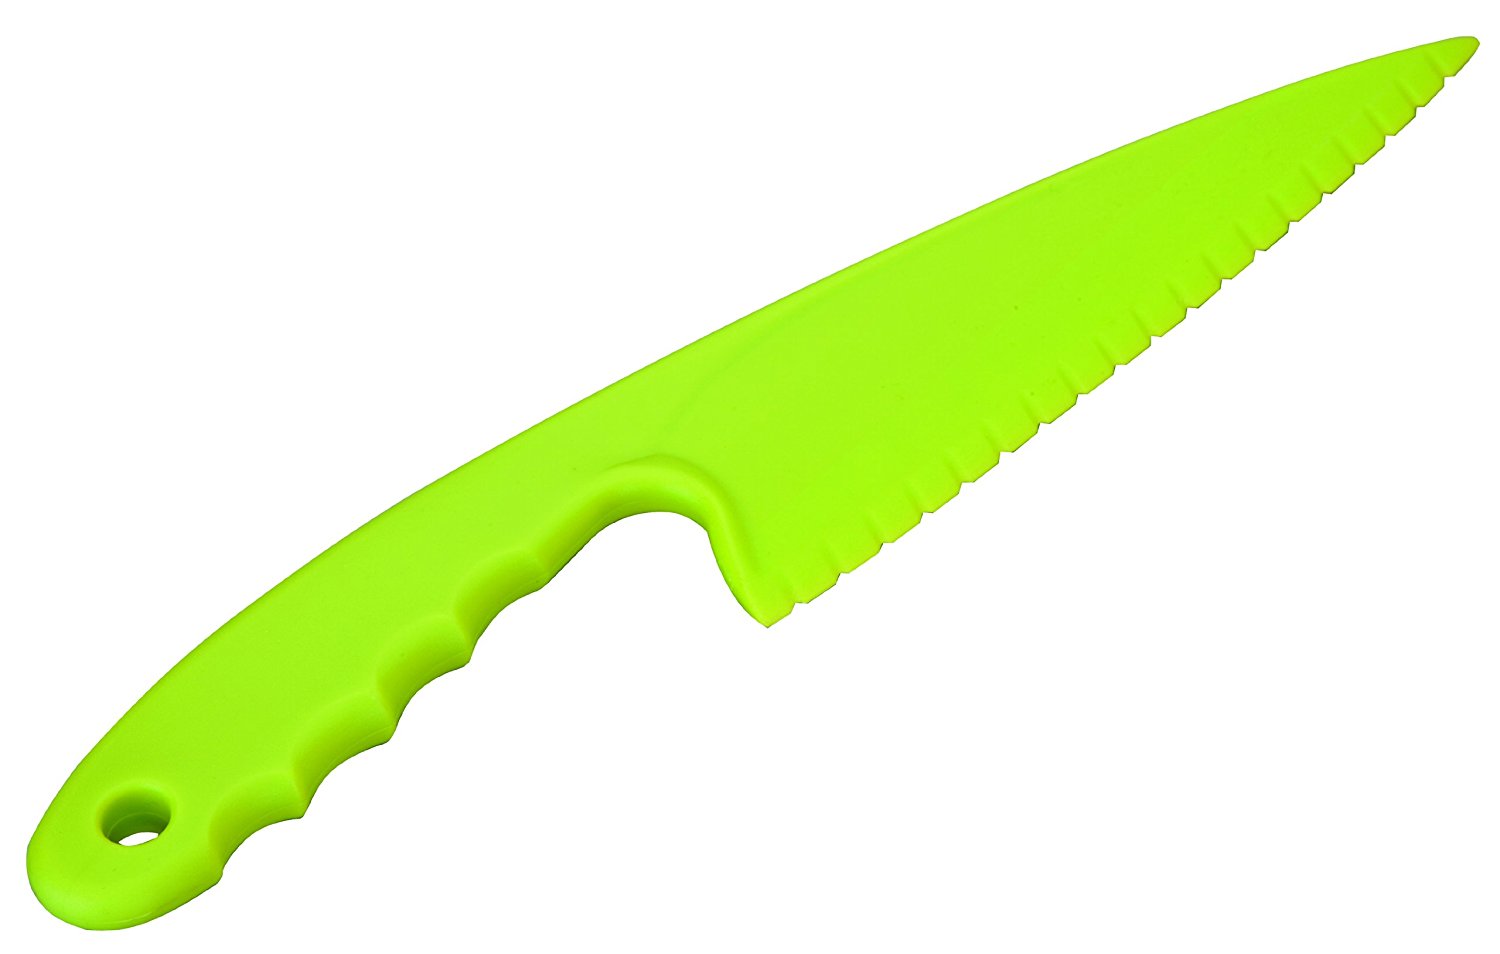 Cuchillo para niños pequeños para cortar I Cuchillos infantiles con  temática de arco iris para cocinar real, cuchillos para niños pequeños con  bolsa